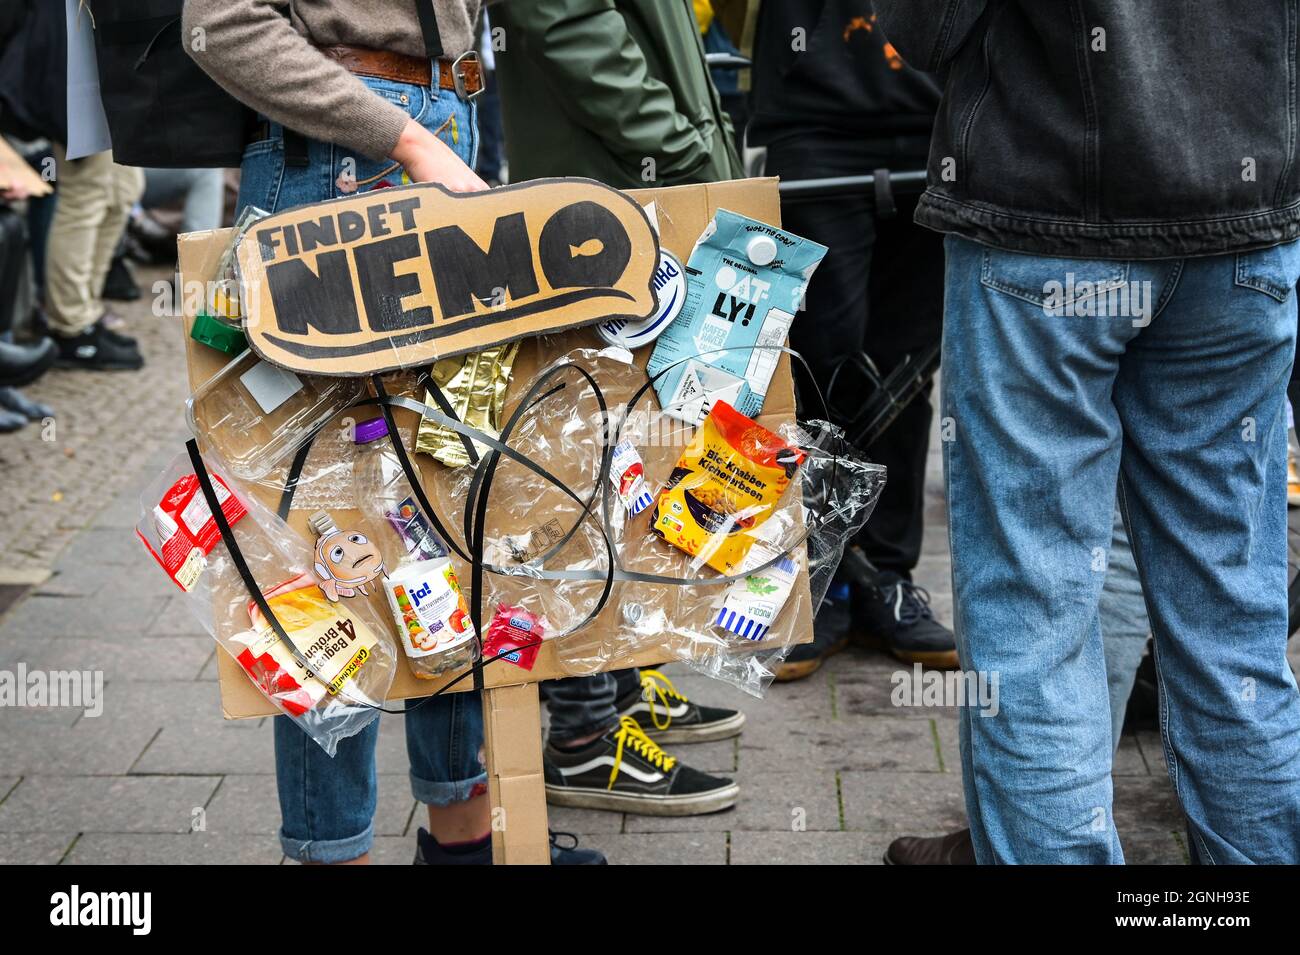 Lübeck, 24. September 2021: Junge Studentin hält ein kreatives Protestschild aus Pappe, das mit viel Plastikmüll und Texterfassung verklebt ist Stockfoto